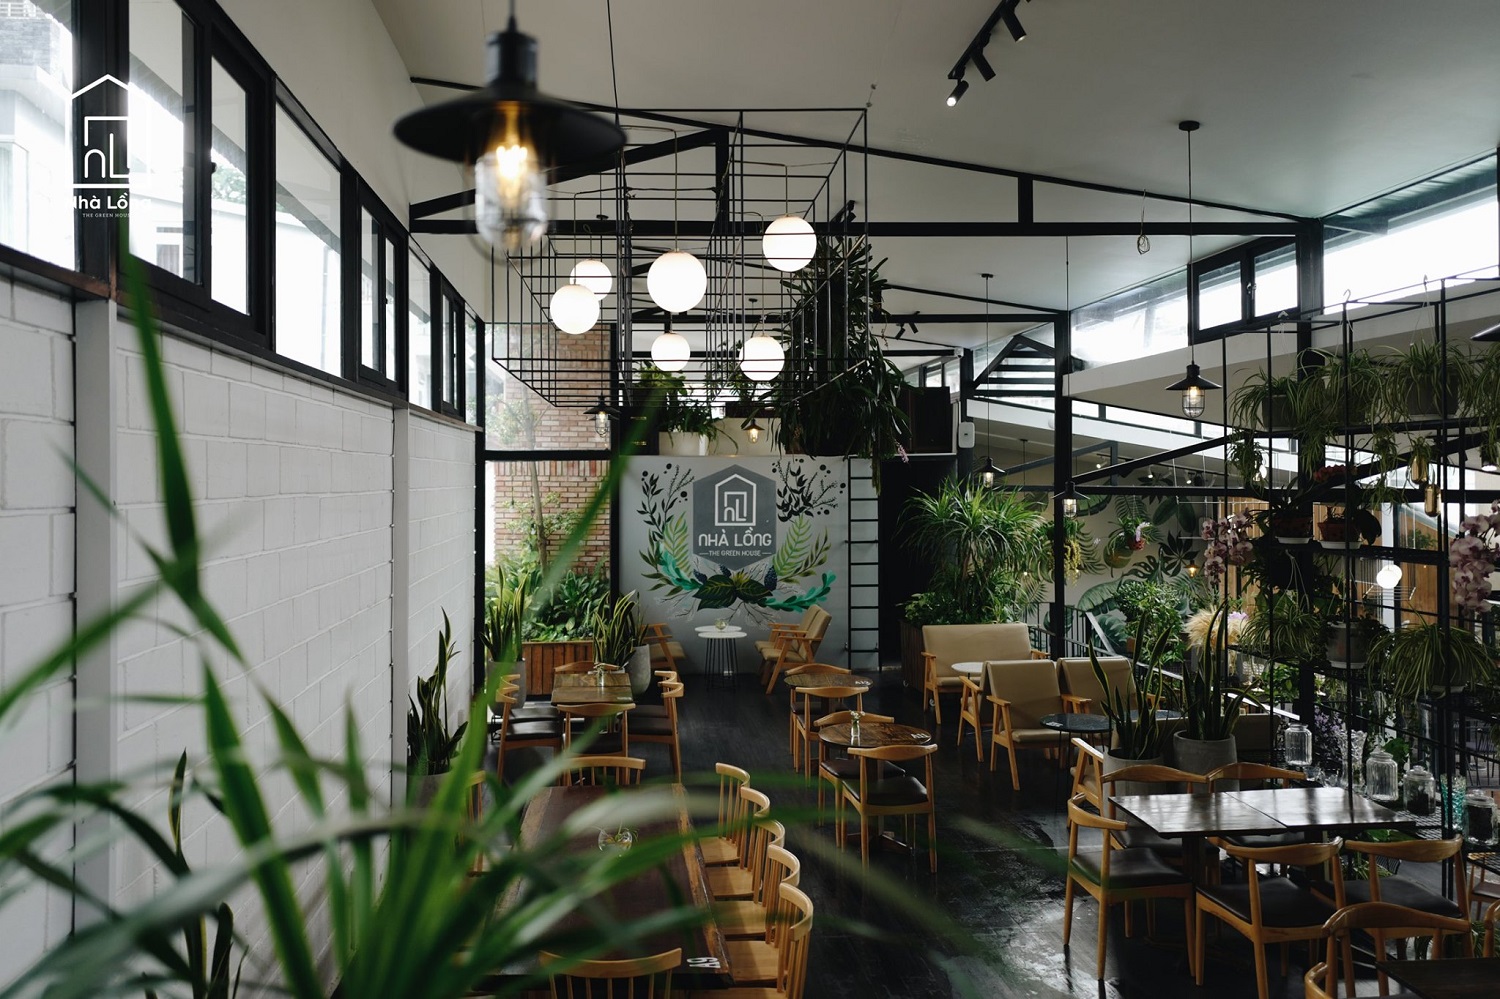 Nhà Lồng Coffee – Quán café lung linh với view thung lũng cực đẹp 28